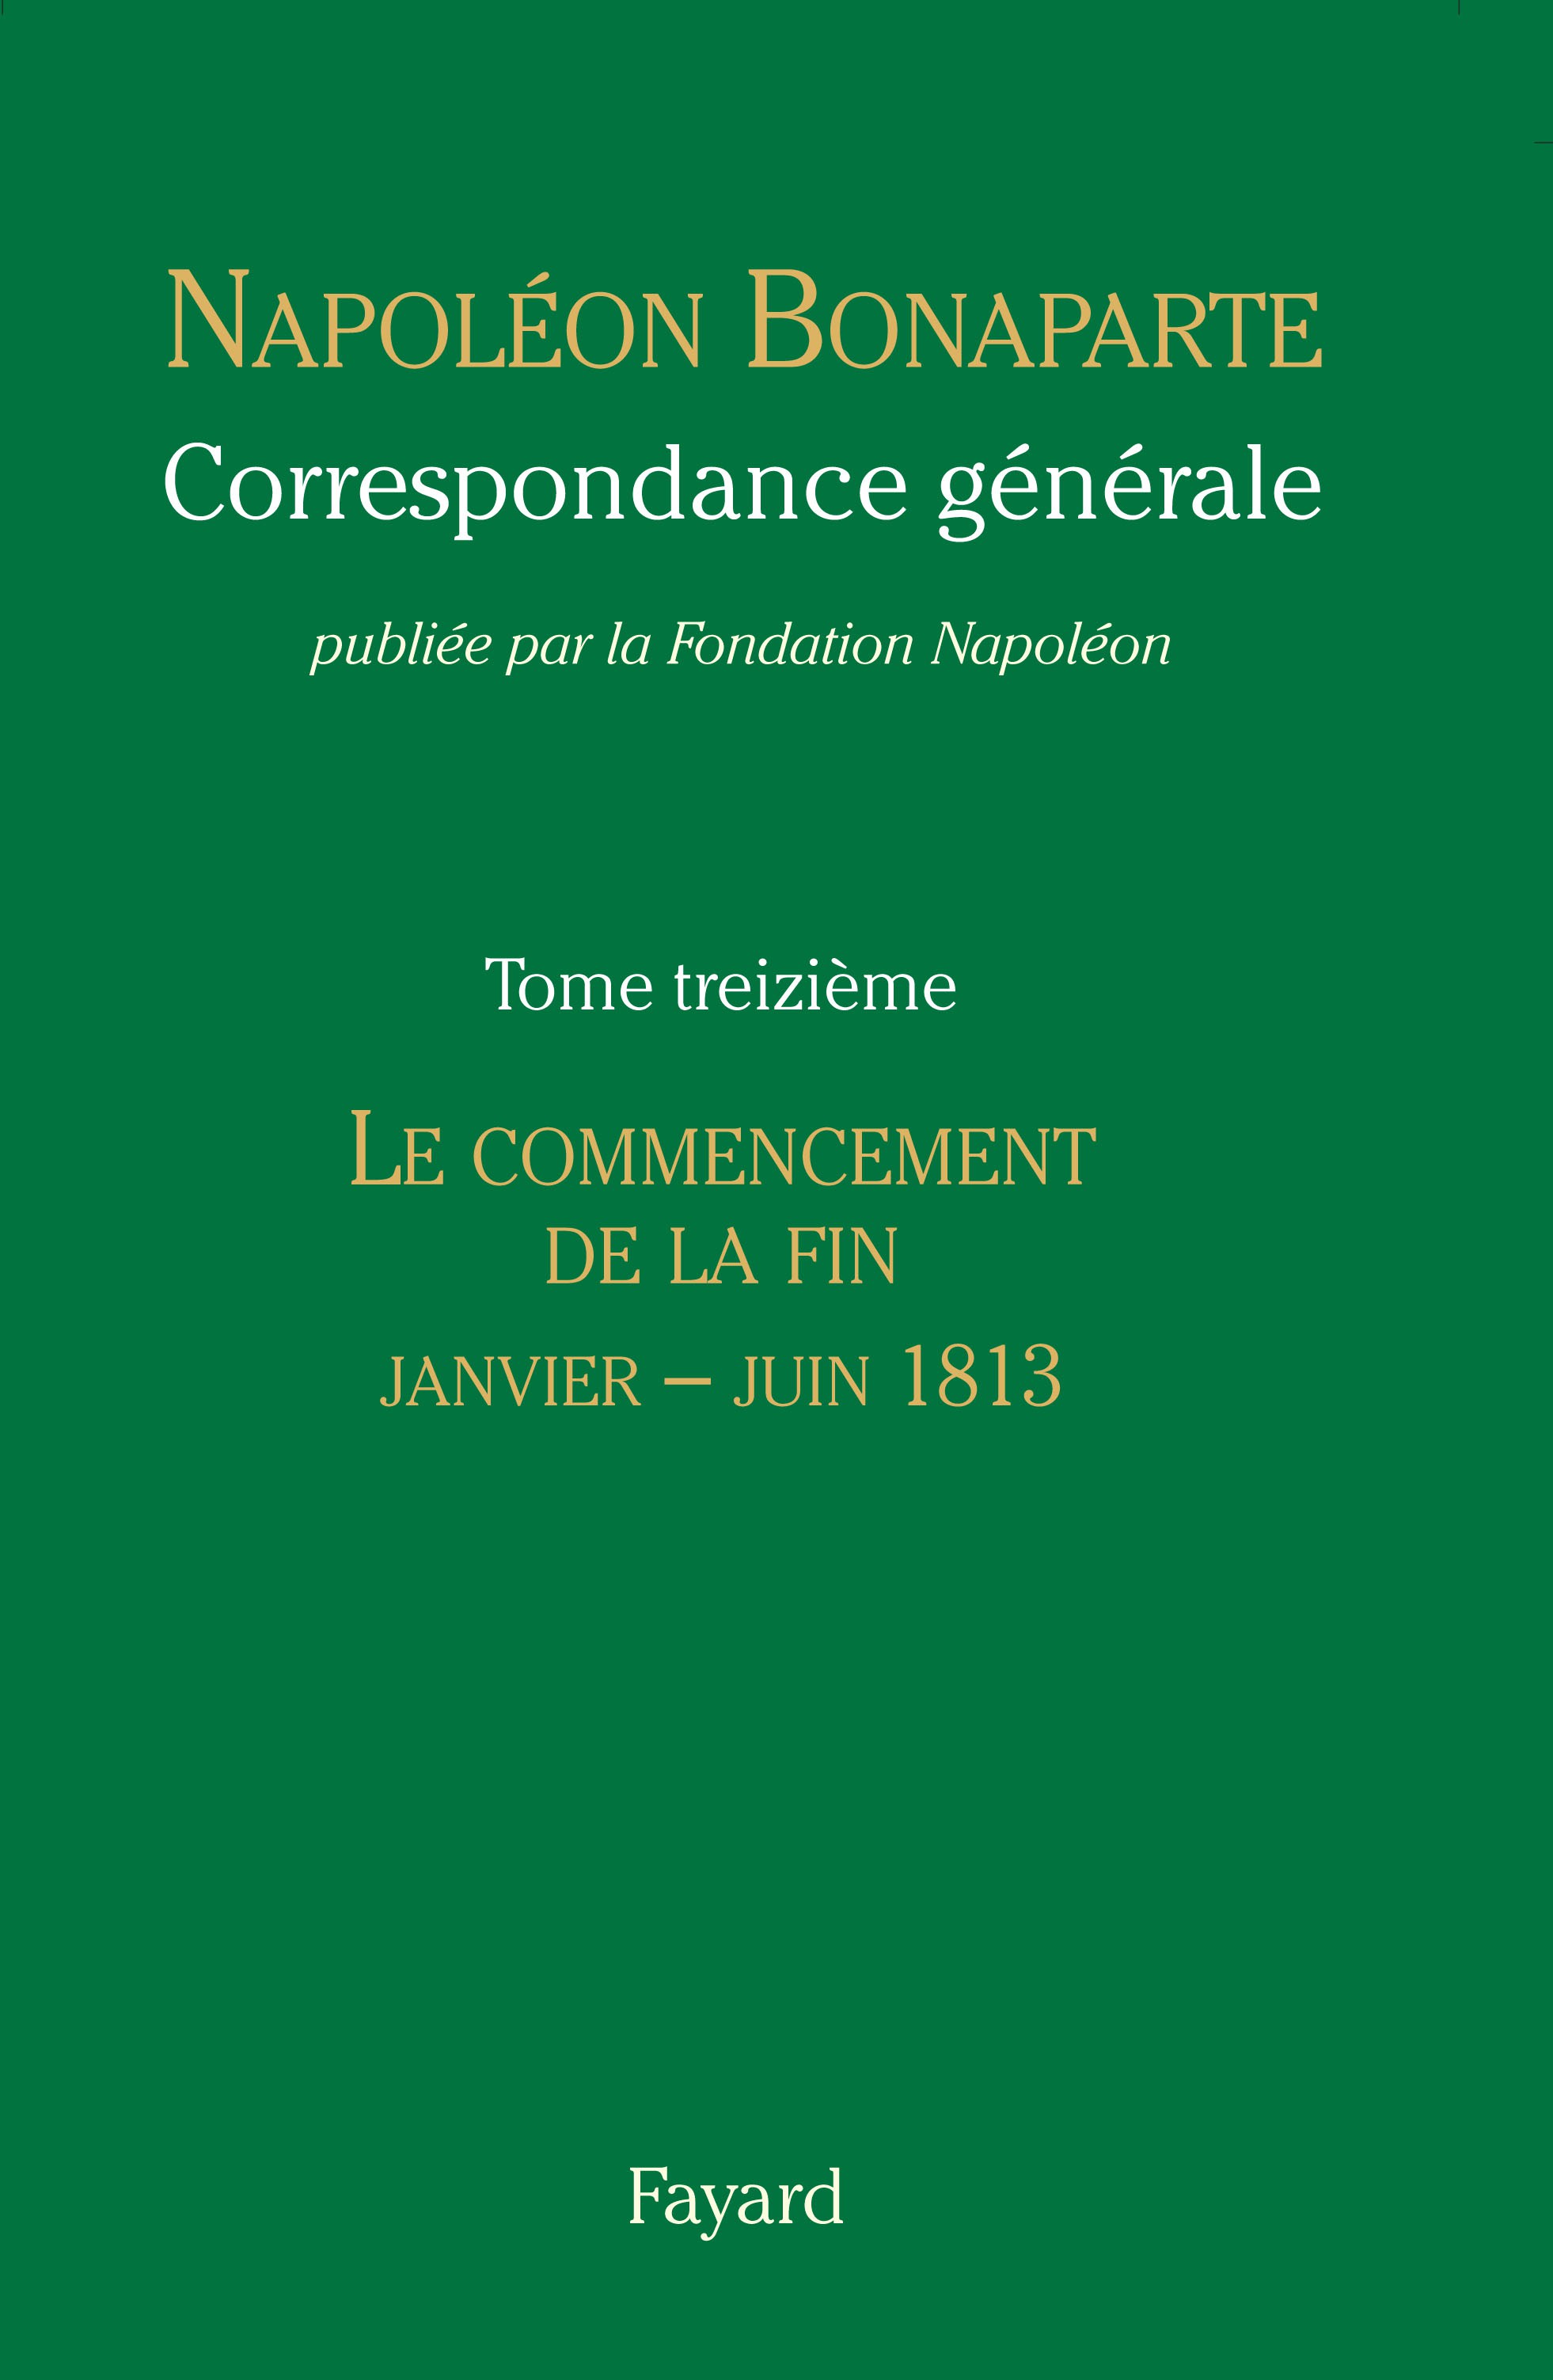 Correspondance de Napoléon, Tome XIII - janvier-juin 1813 © Fayard / Fondation Napoléon